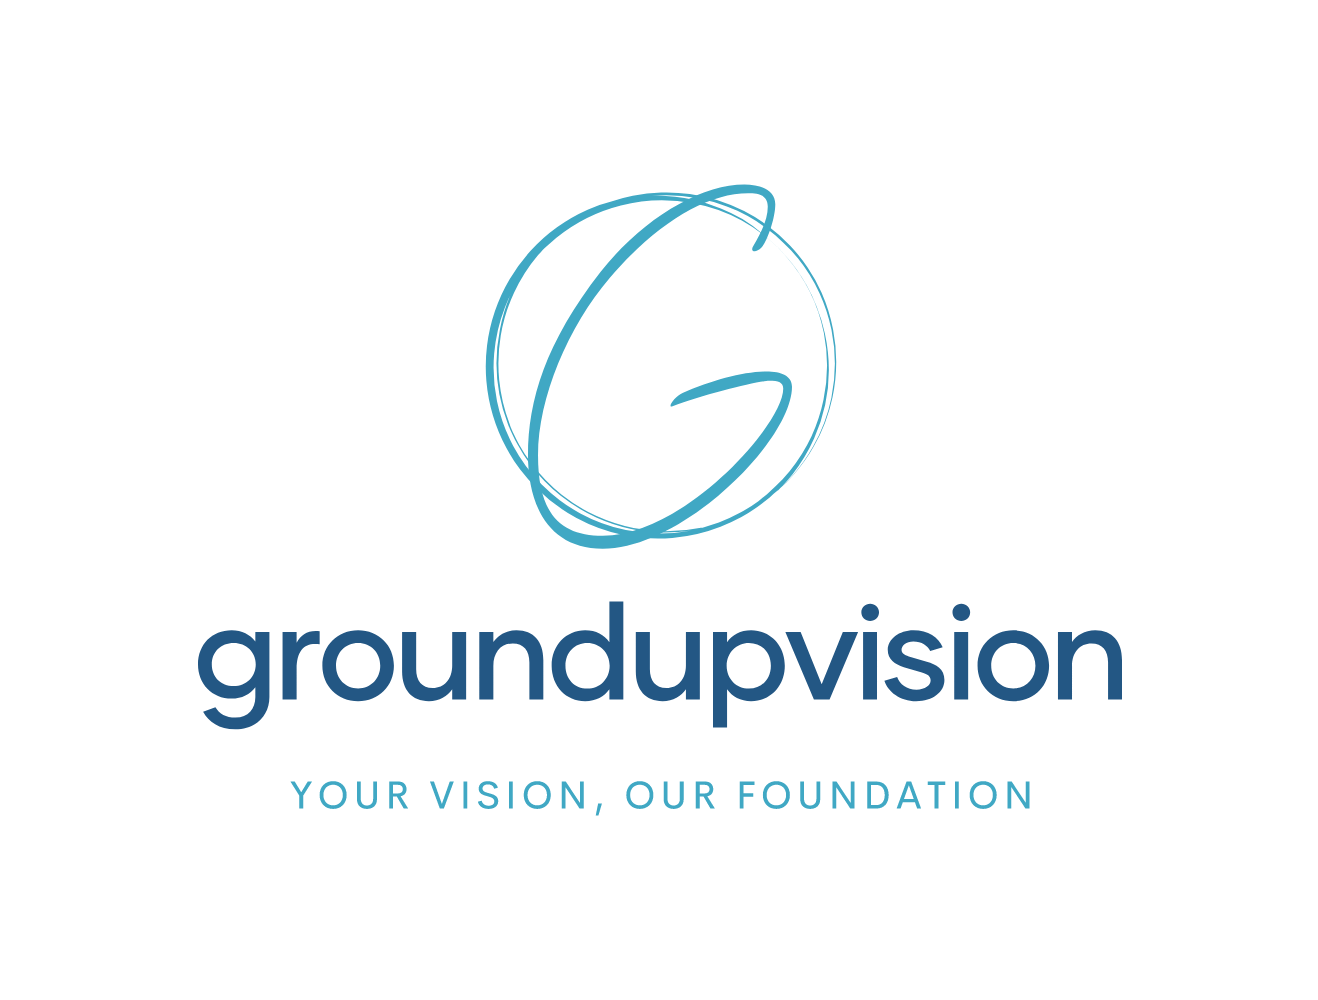 groundupvision